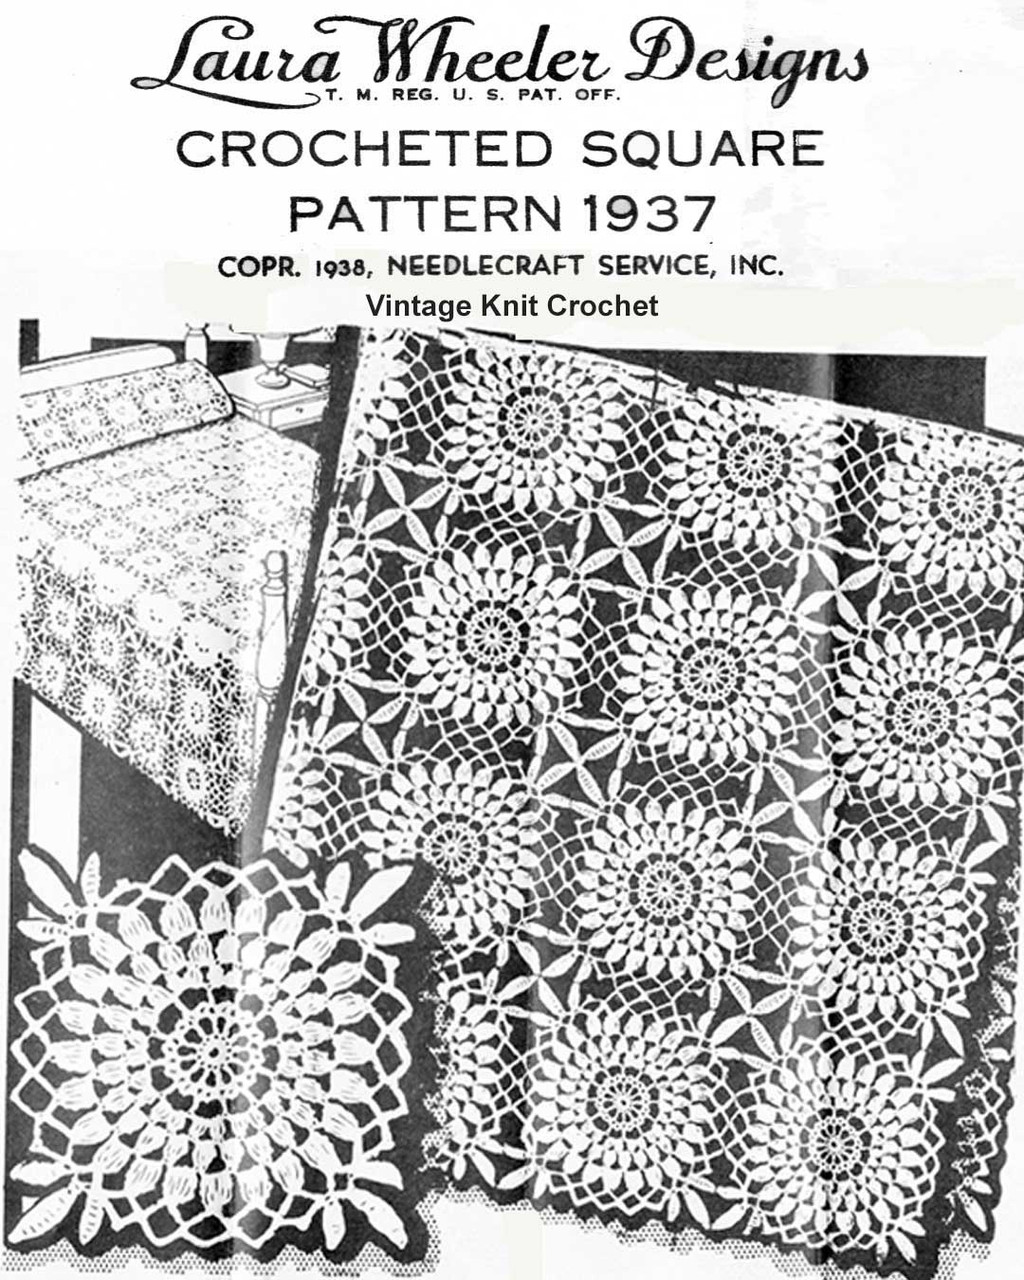 Flower Square Crochet Pattern Laura wheeler Design 1937